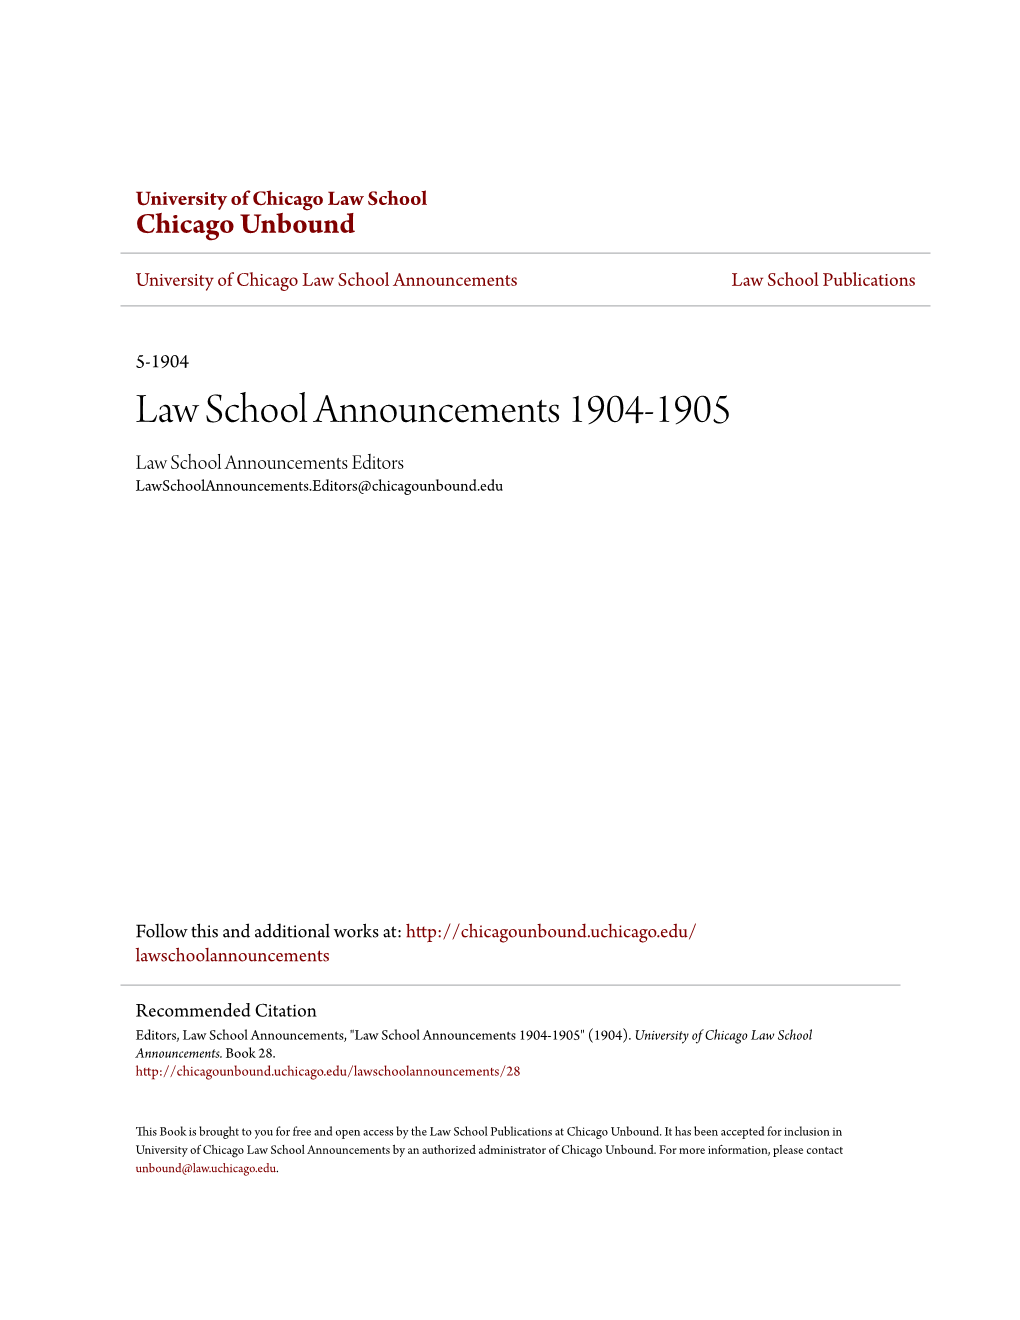 Law School Announcements 1904-1905 Law School Announcements Editors Lawschoolannouncements.Editors@Chicagounbound.Edu